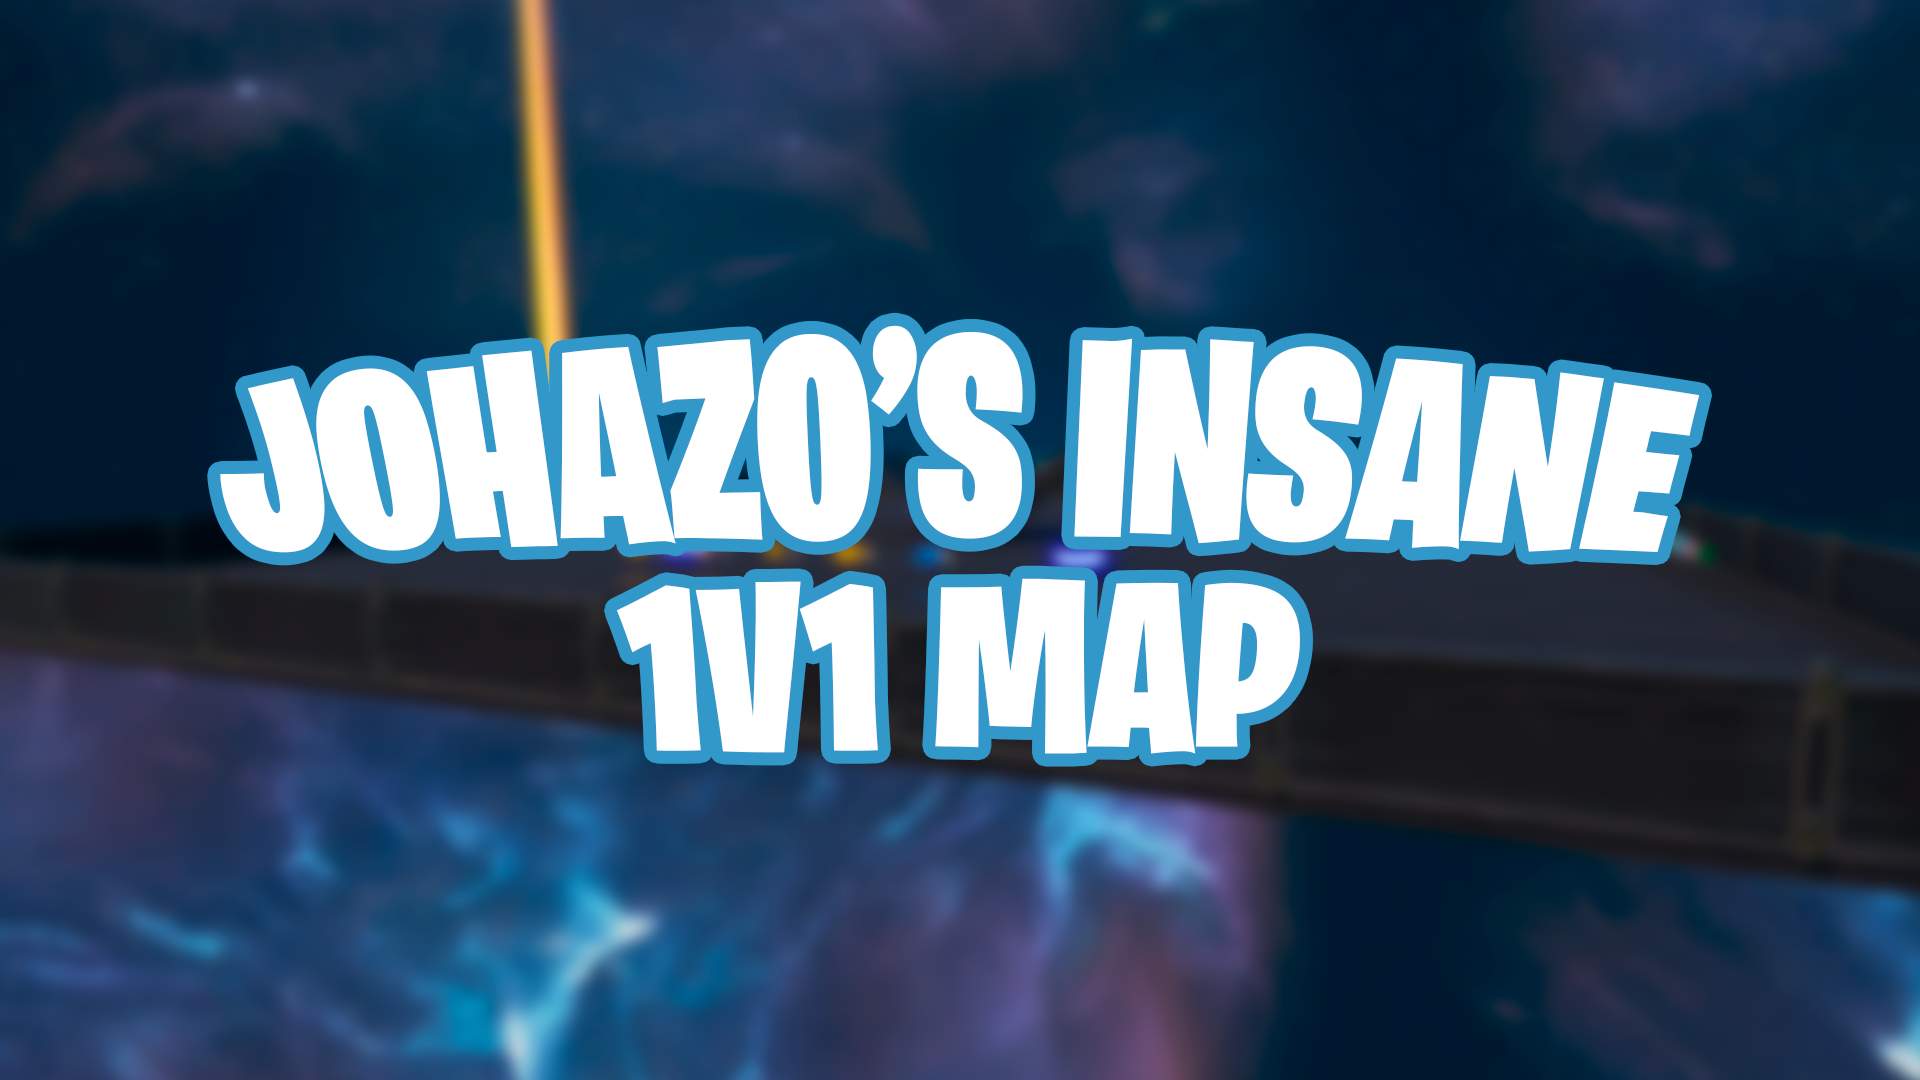 JOHAZO'S INSANE 1V1 MAP